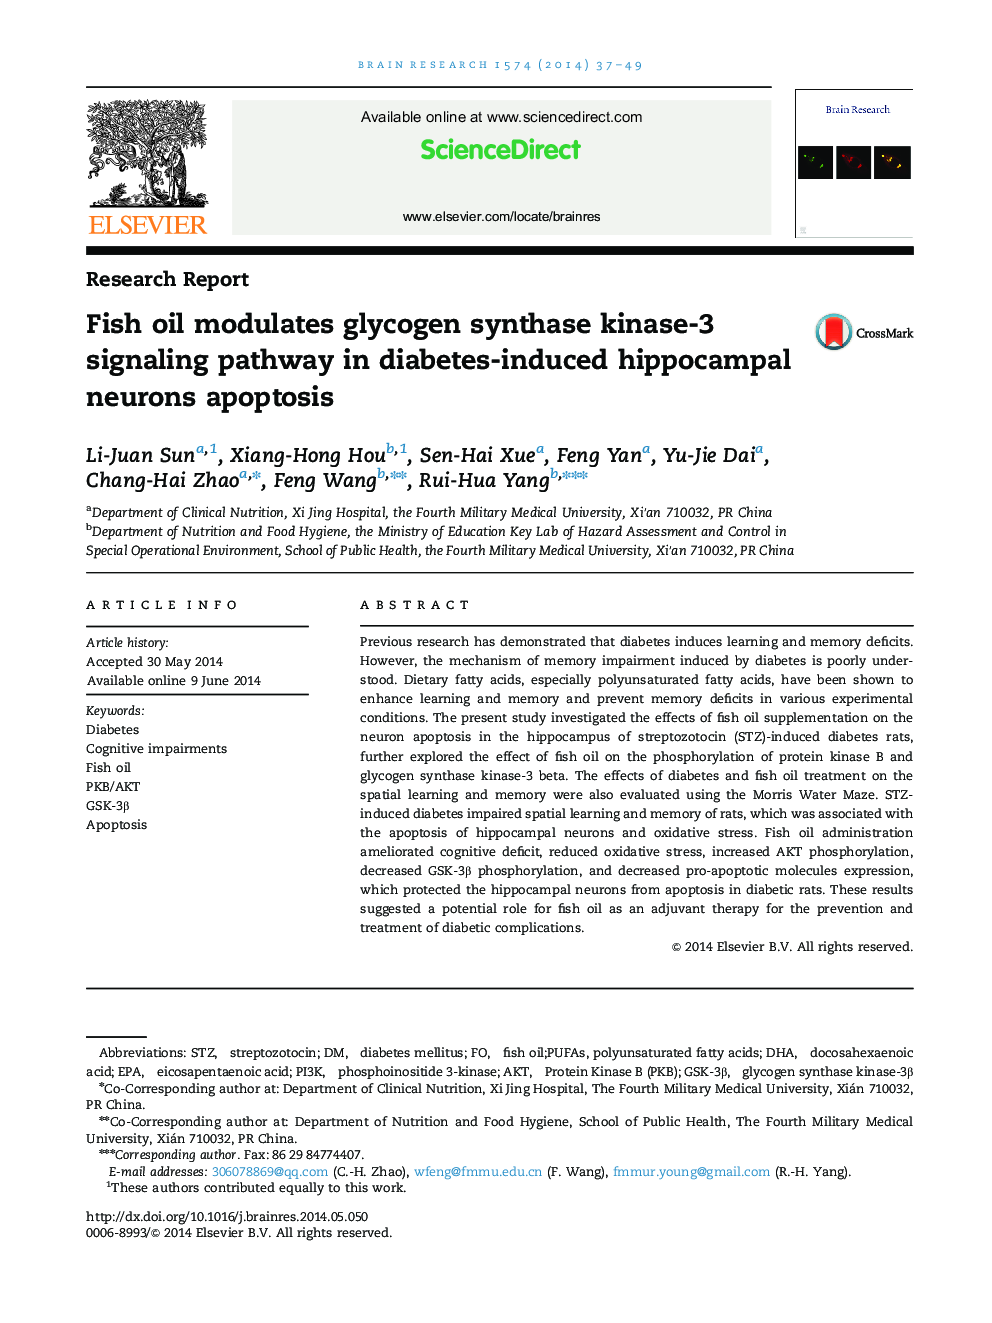 روغن ماهی می تواند مسیر سیگنالینگ گلیکوزین سیتستاز کیناز 3 را در آپوپتوز های عصبی هیپوکامپ ناشی از دیابت 